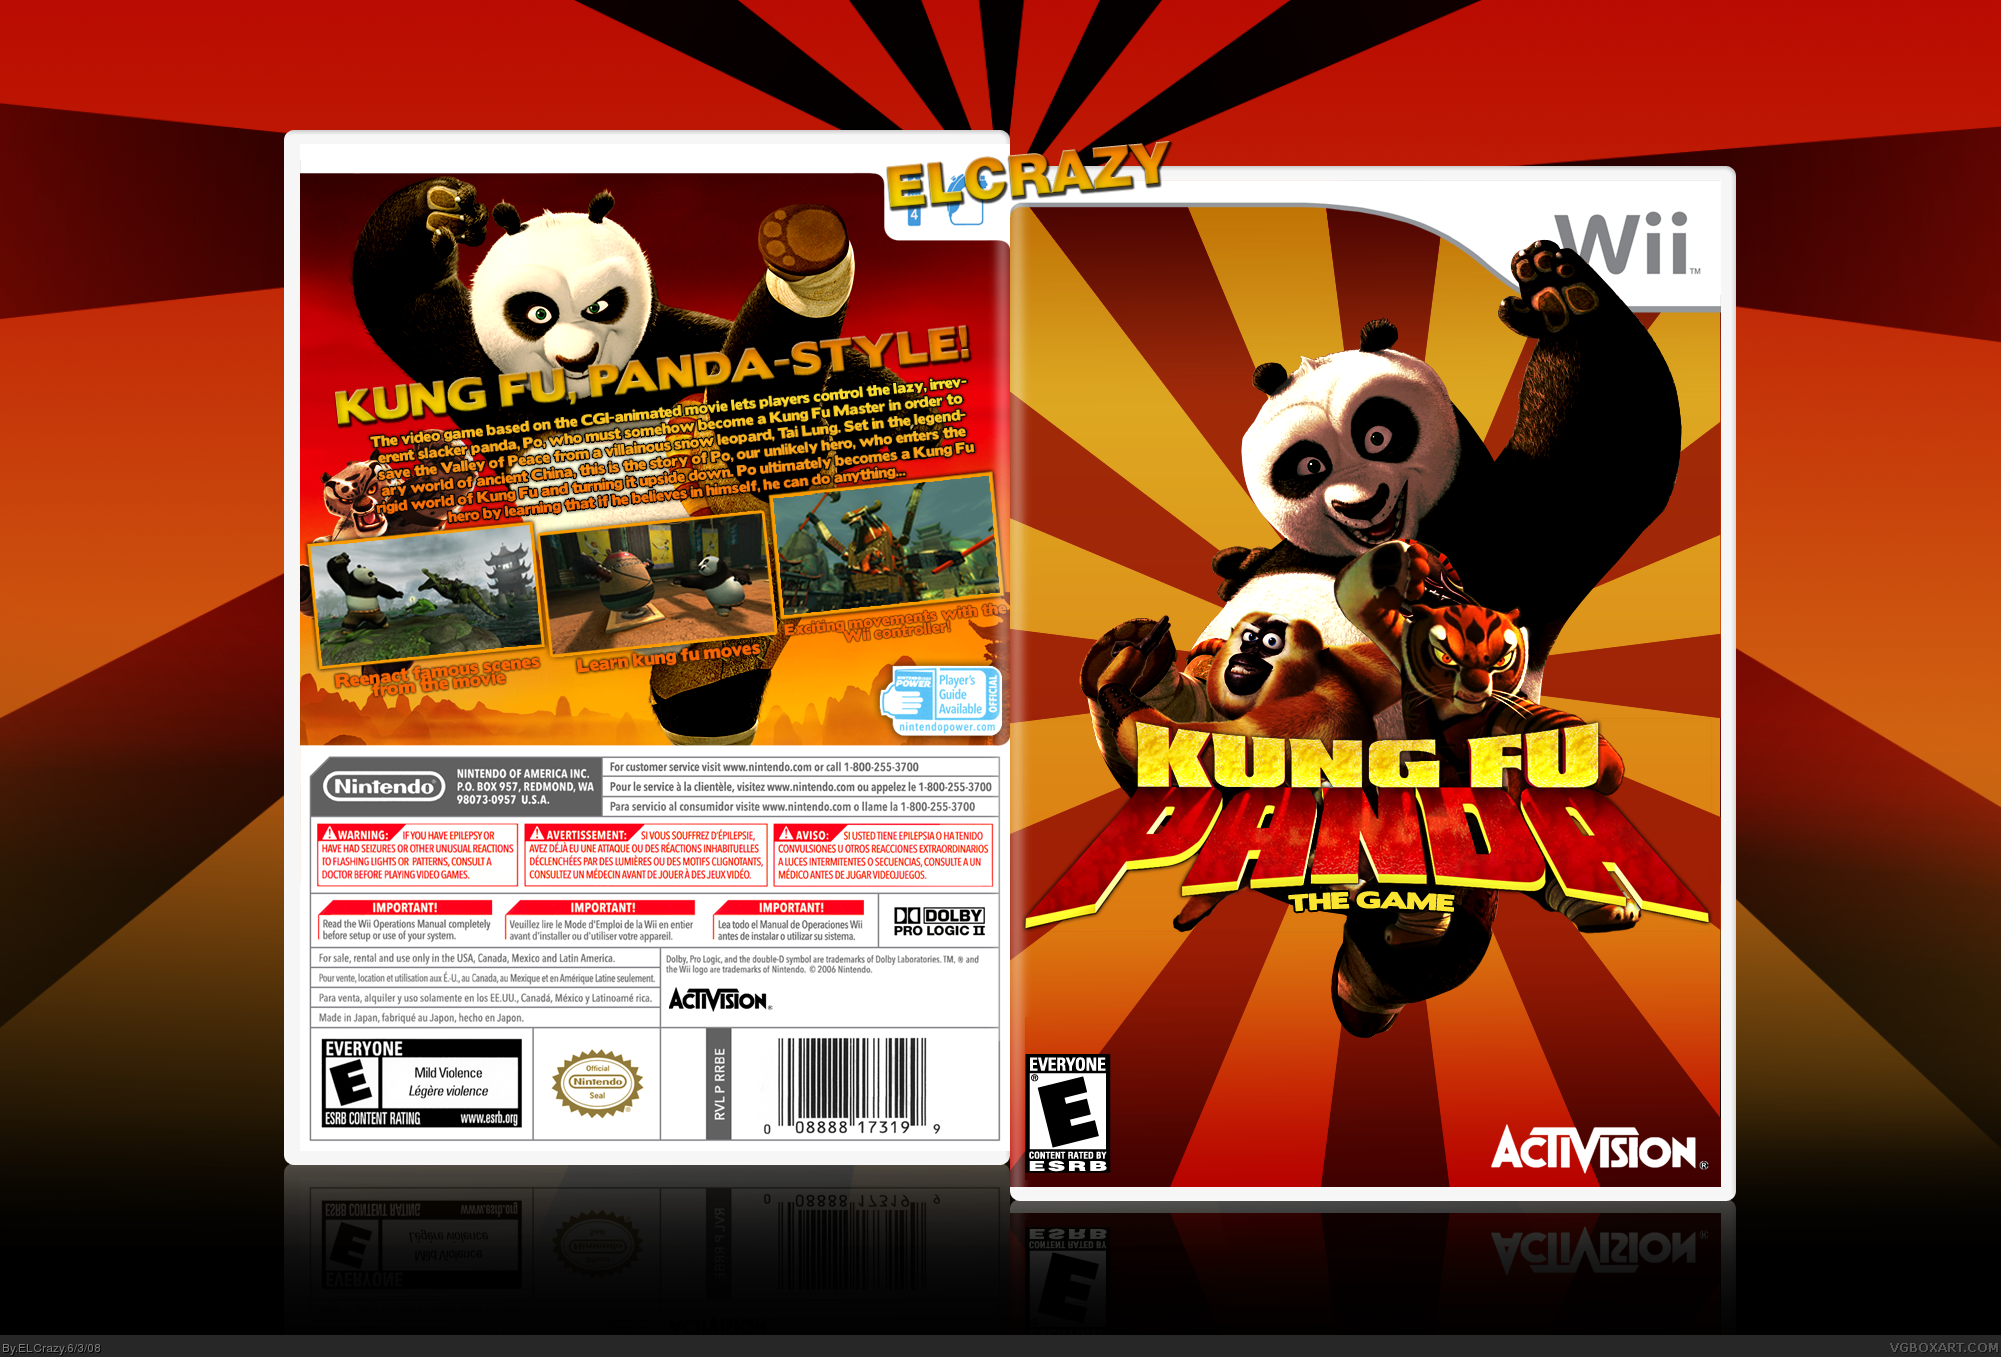 Kung Fu Panda box cover